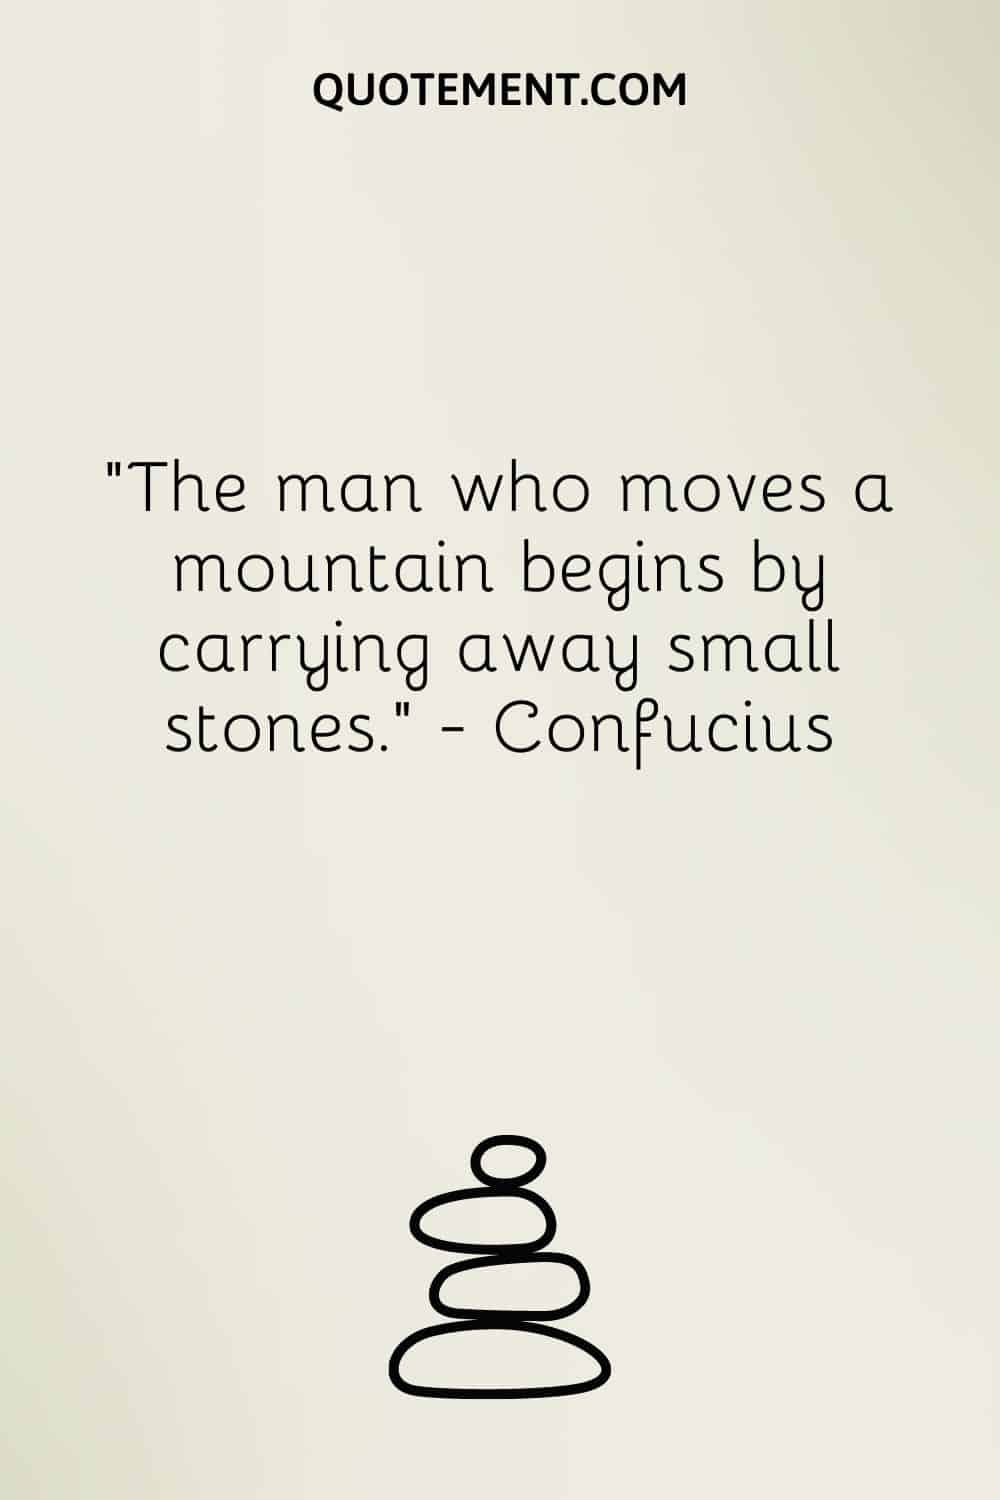 El hombre que mueve una montaña empieza por llevarse pequeñas piedras